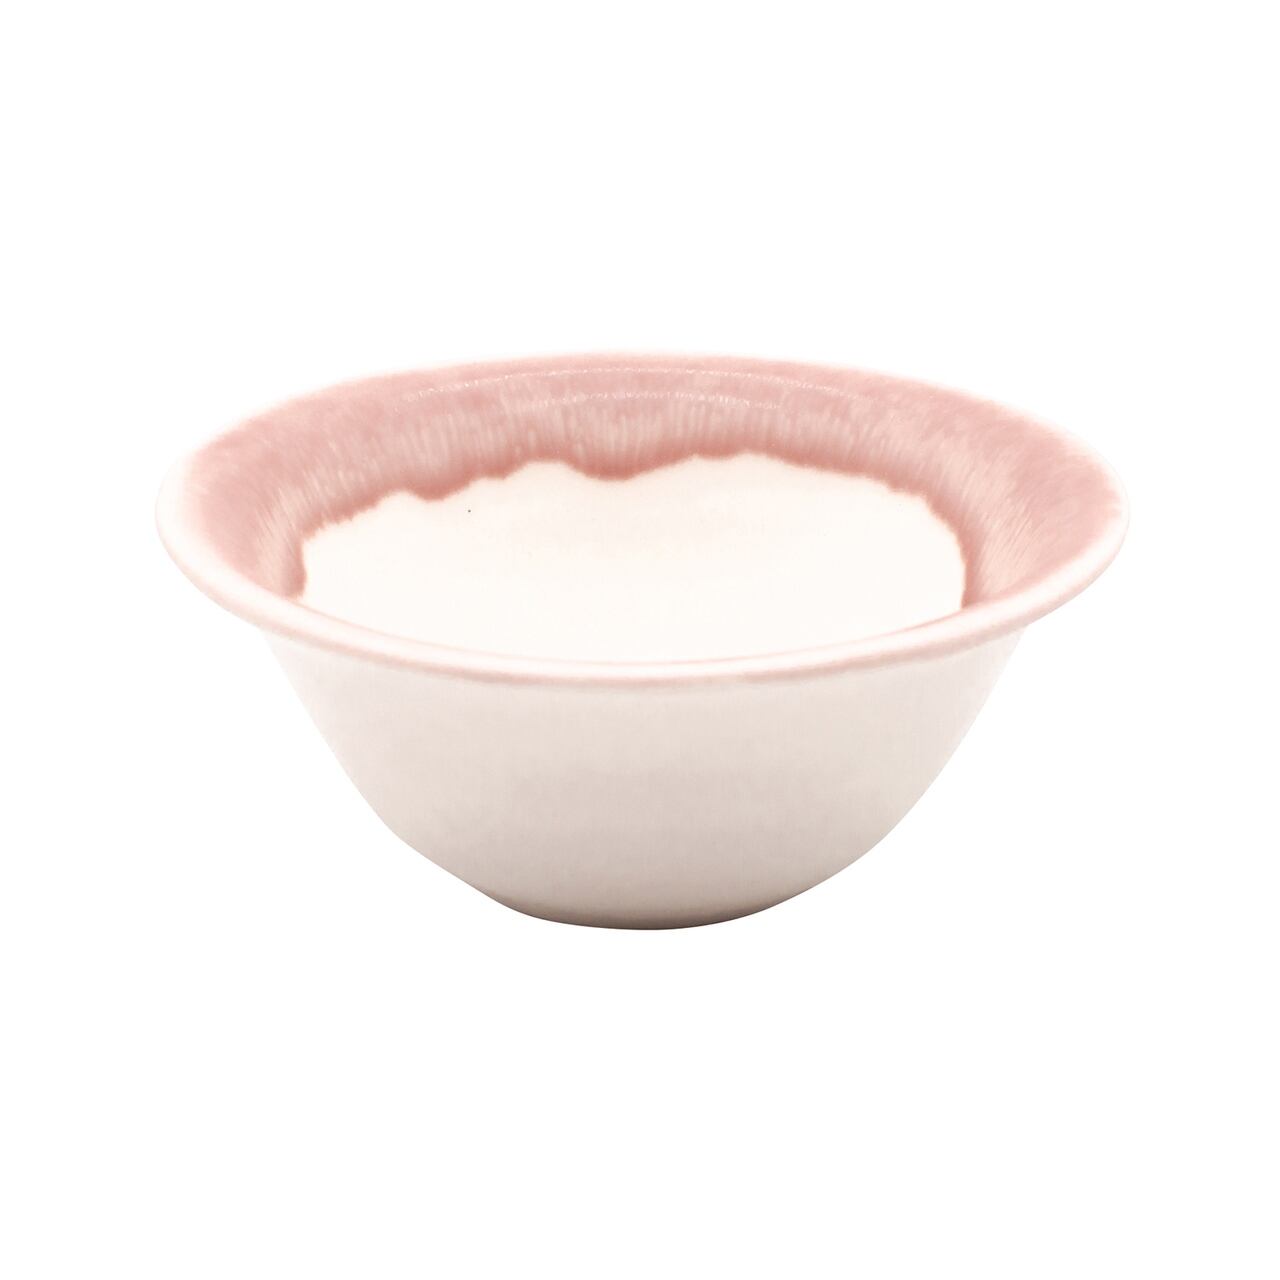 aito製作所 「 トキメキ色 」 サラダボウル 鉢 皿 約11cm プラム 美濃焼 262049